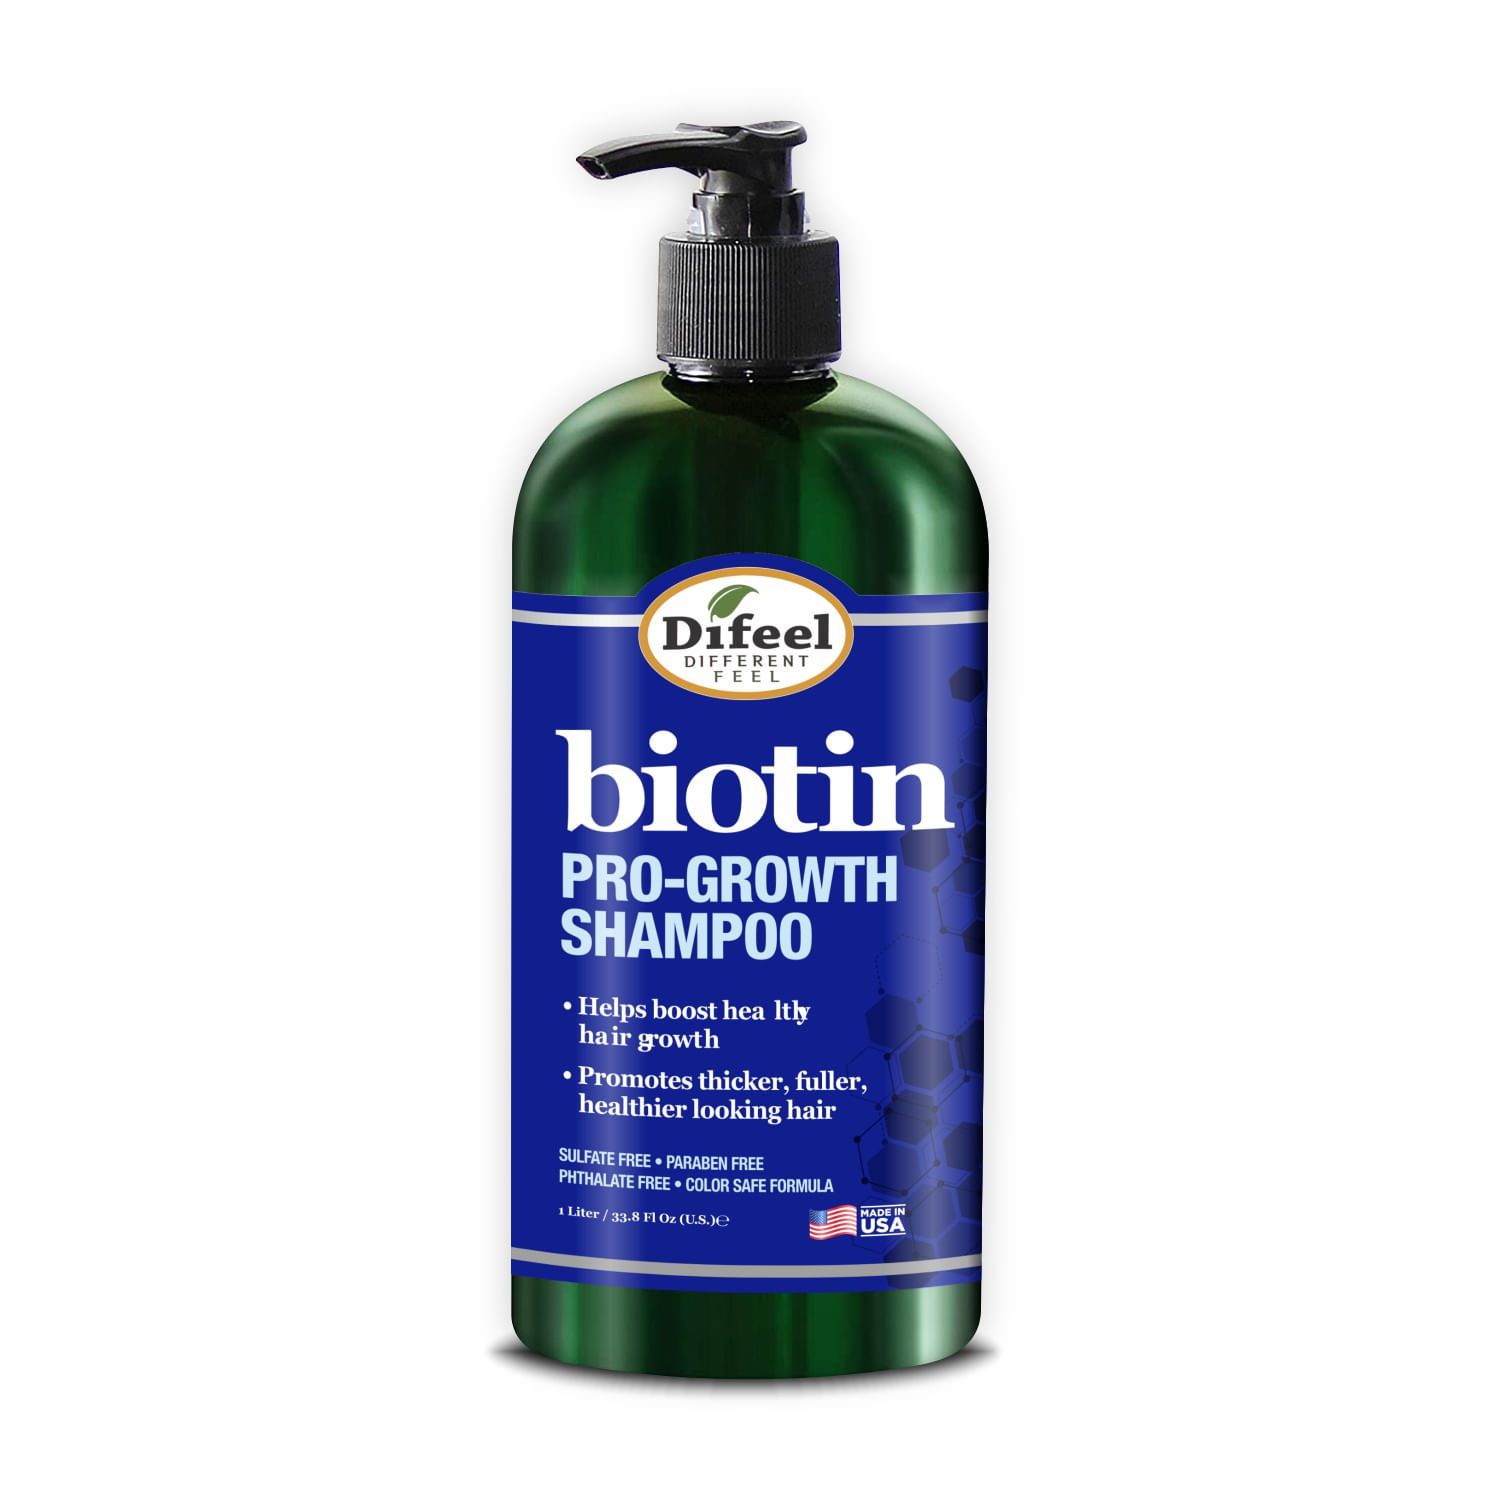 Difeel Biotin Shampoo Pro Crecimiento 1Lt – Detiene la caída del cabello – Resultados en 10 días